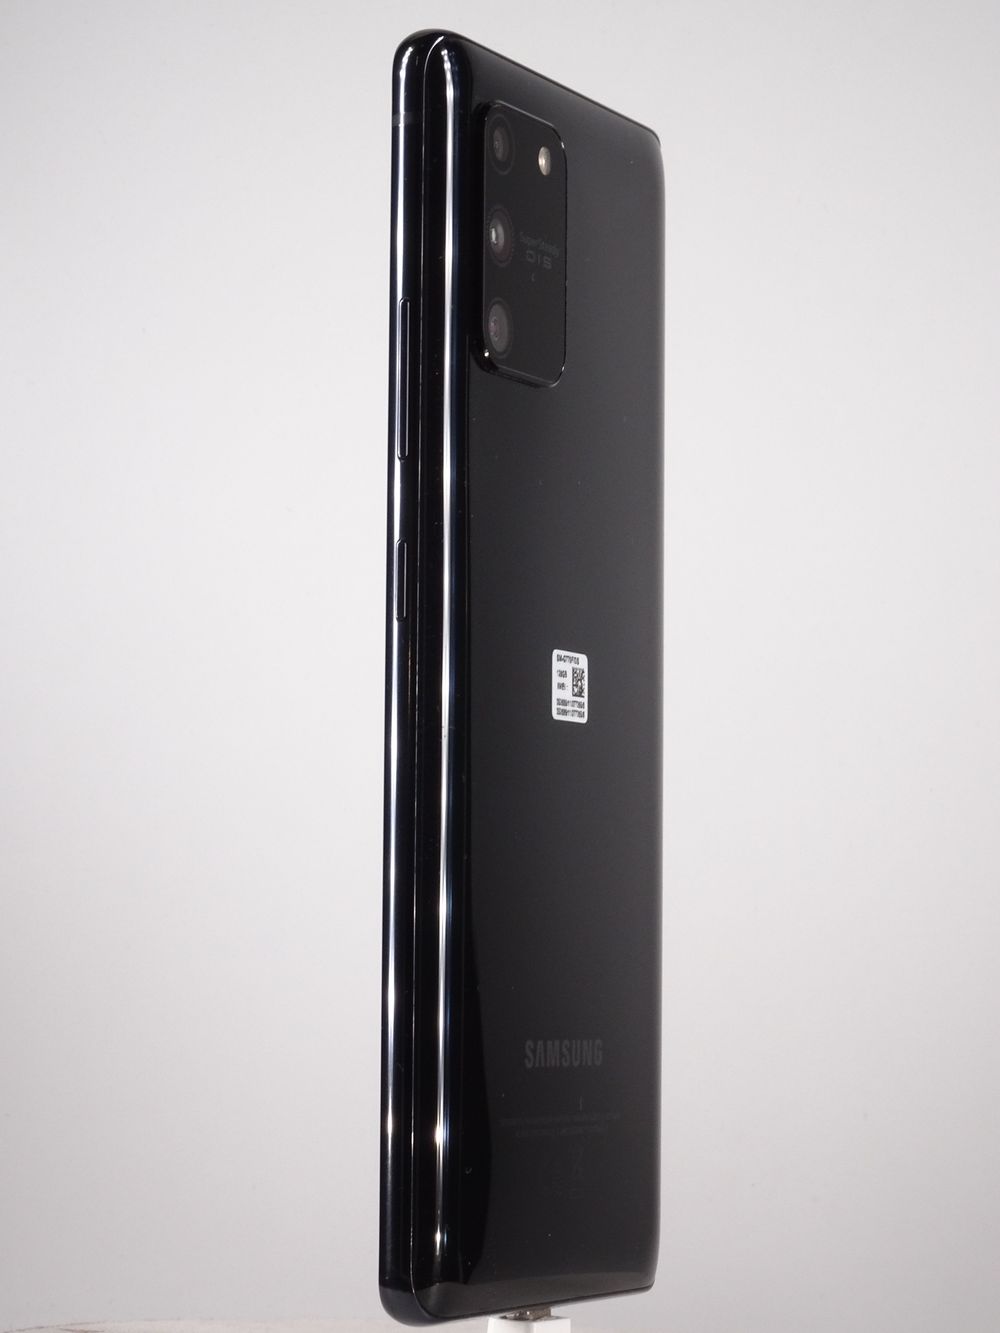 Мобилен телефон Samsung, Galaxy S10 Lite, 128 GB, Black,  Като нов